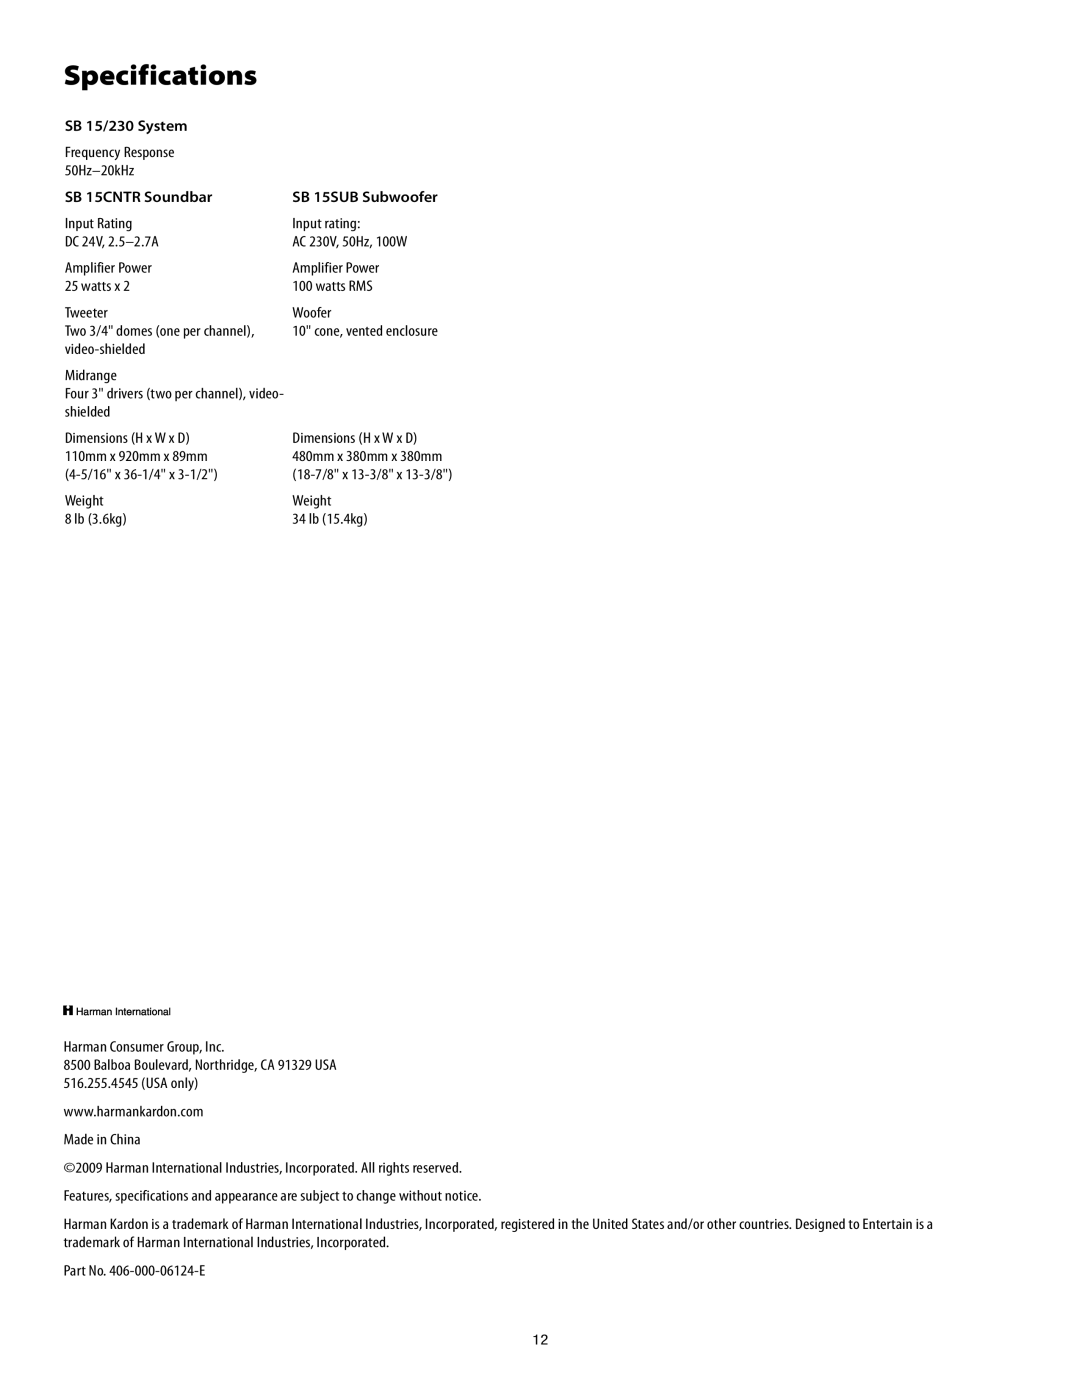 Harman-Kardon SB15/230 manual Specifications, SB 15/230 System, SB 15CNTR Soundbar, SB 15SUB Subwoofer 